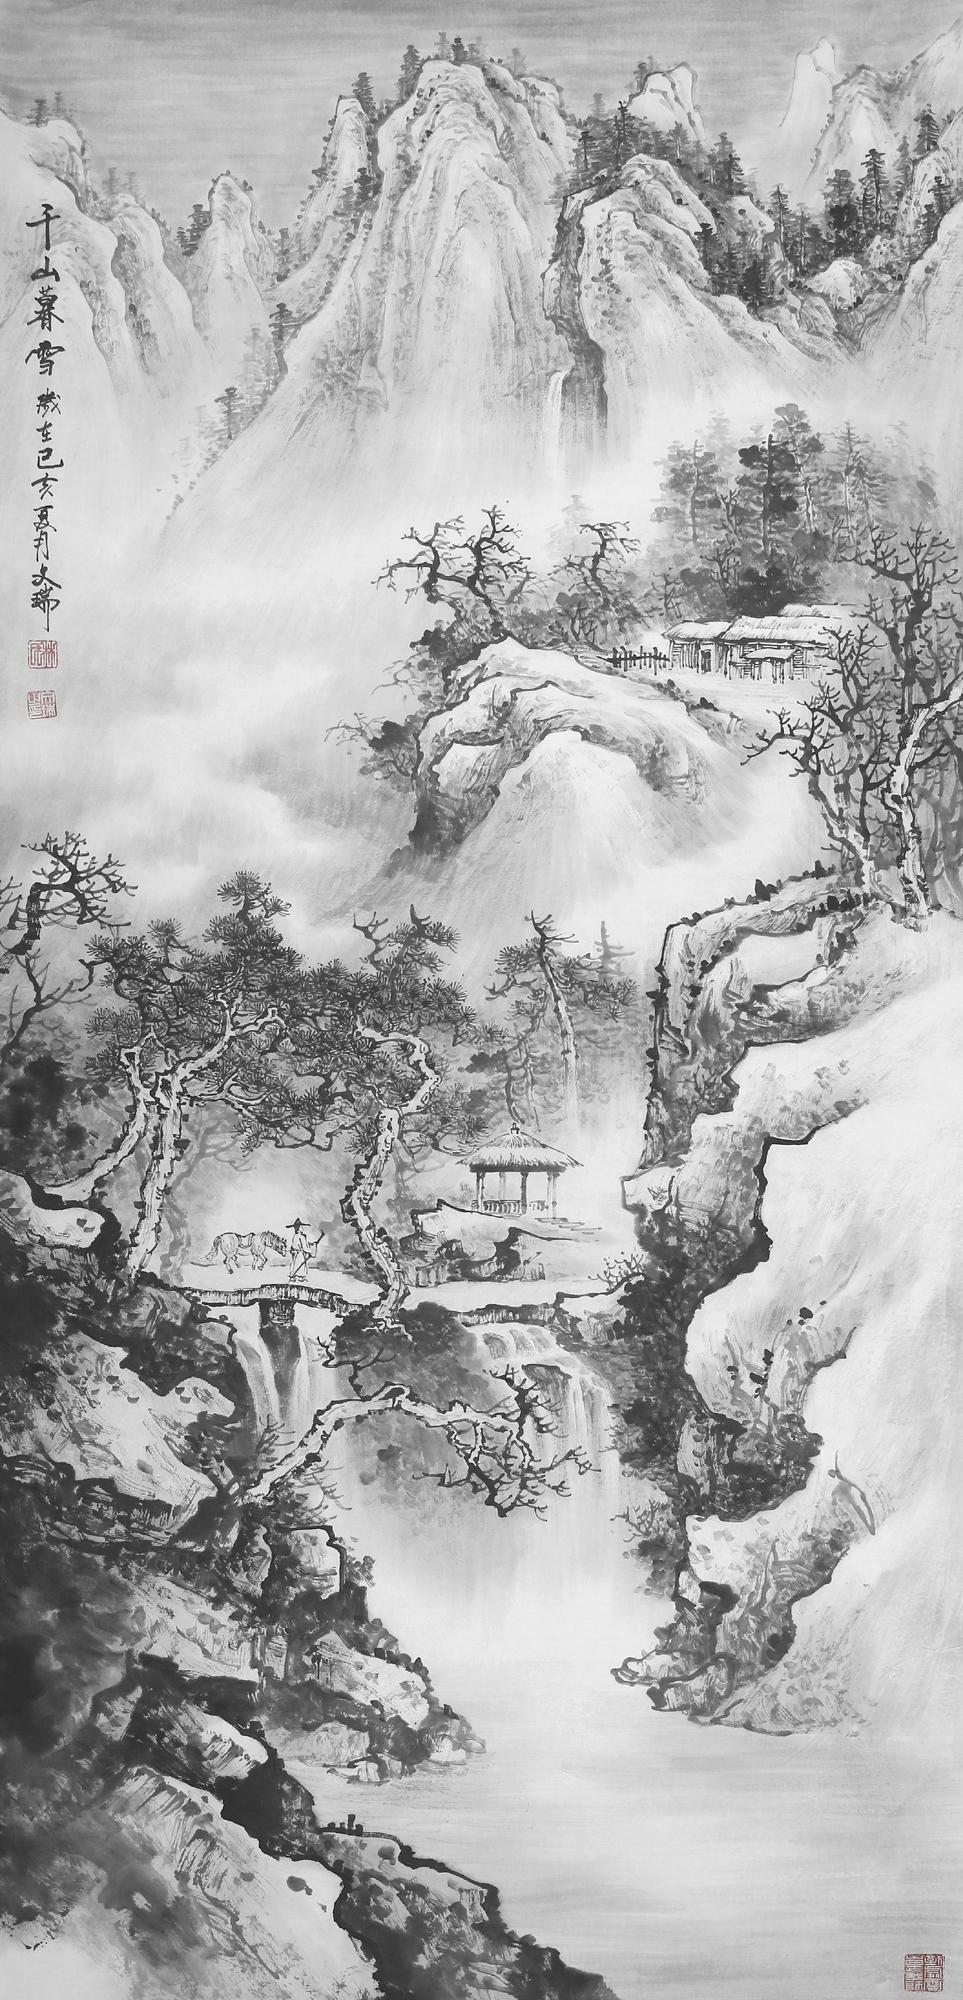 中国书画大家艺术品牌推广工程——著名书画家林文瑞